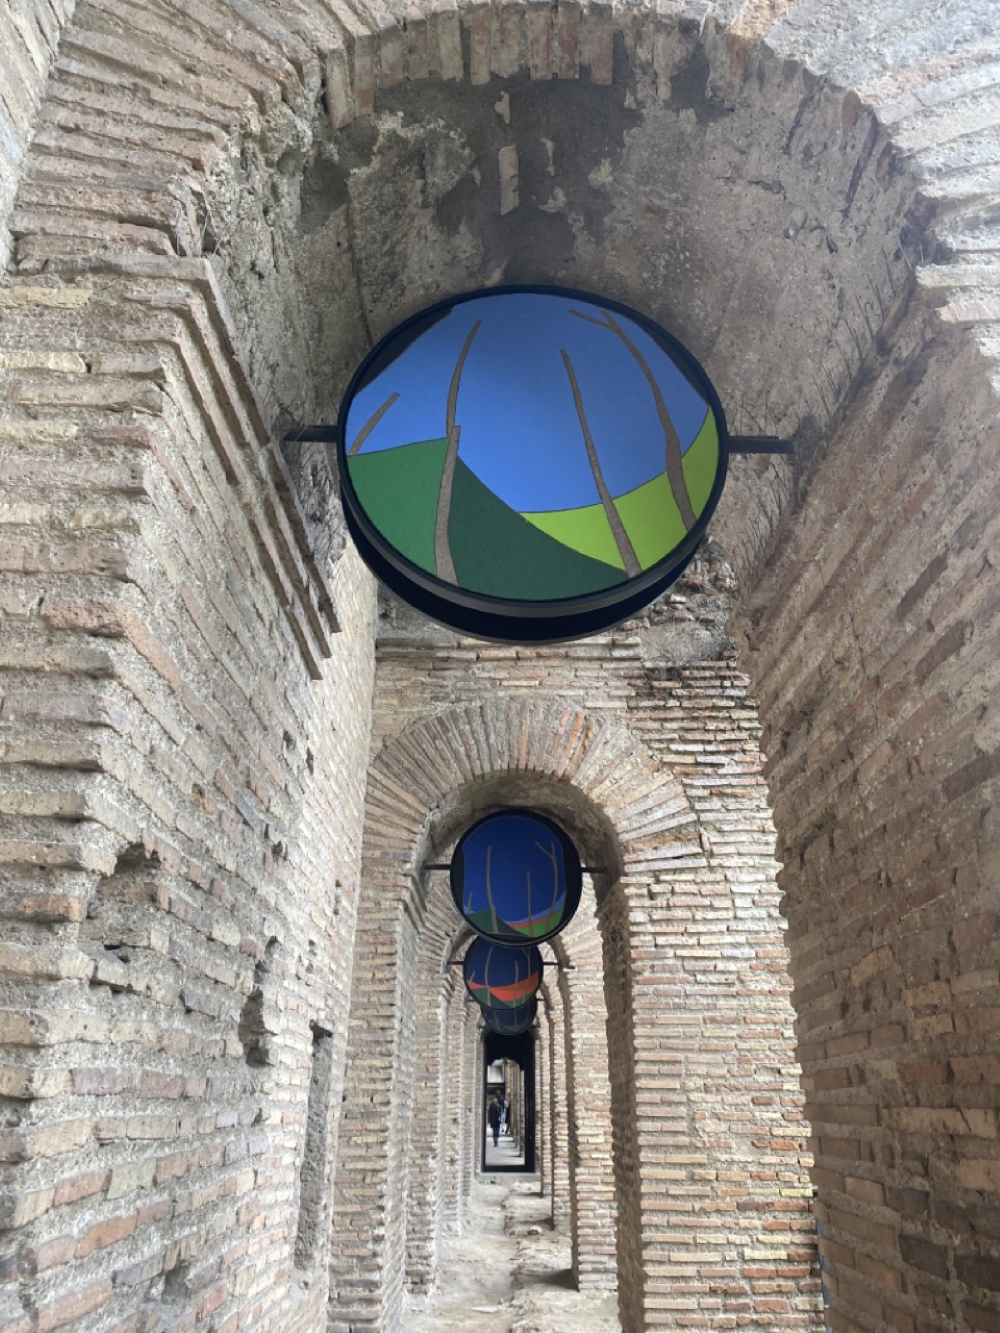 'Un giorno alle mura romane: ore 16:00' on display at Rome's Museo dello Mura. The roundels (tempera on panel) 